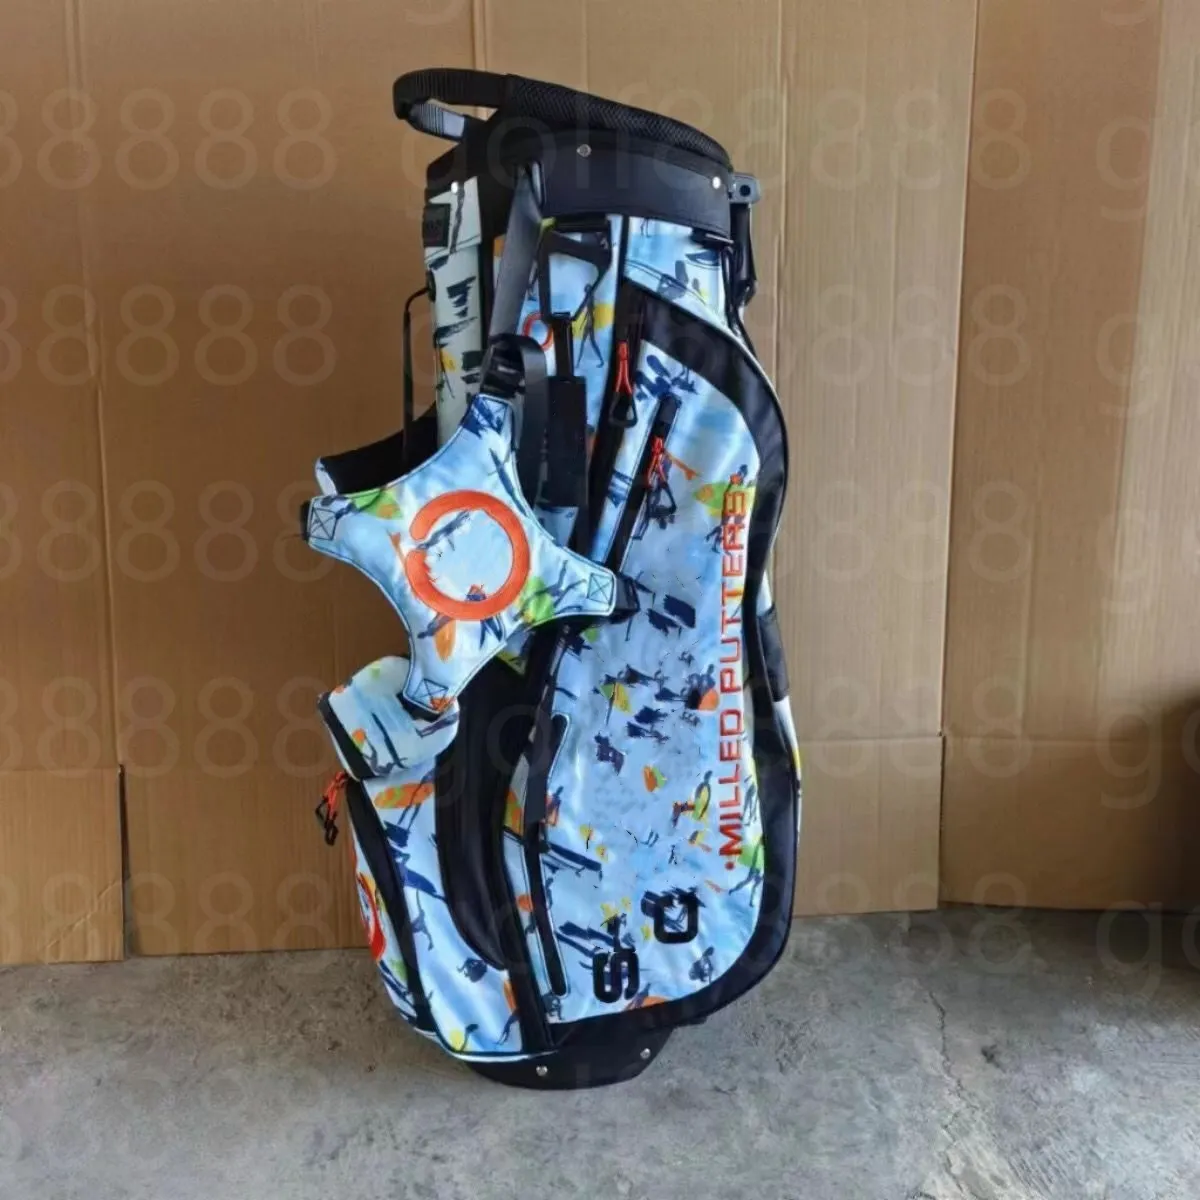 Torby golfowe Orange Pierścień T Stojakowe torby Ultra-Light, Frosted, Waterproof Contet Contet, aby wyświetlić zdjęcia z logo